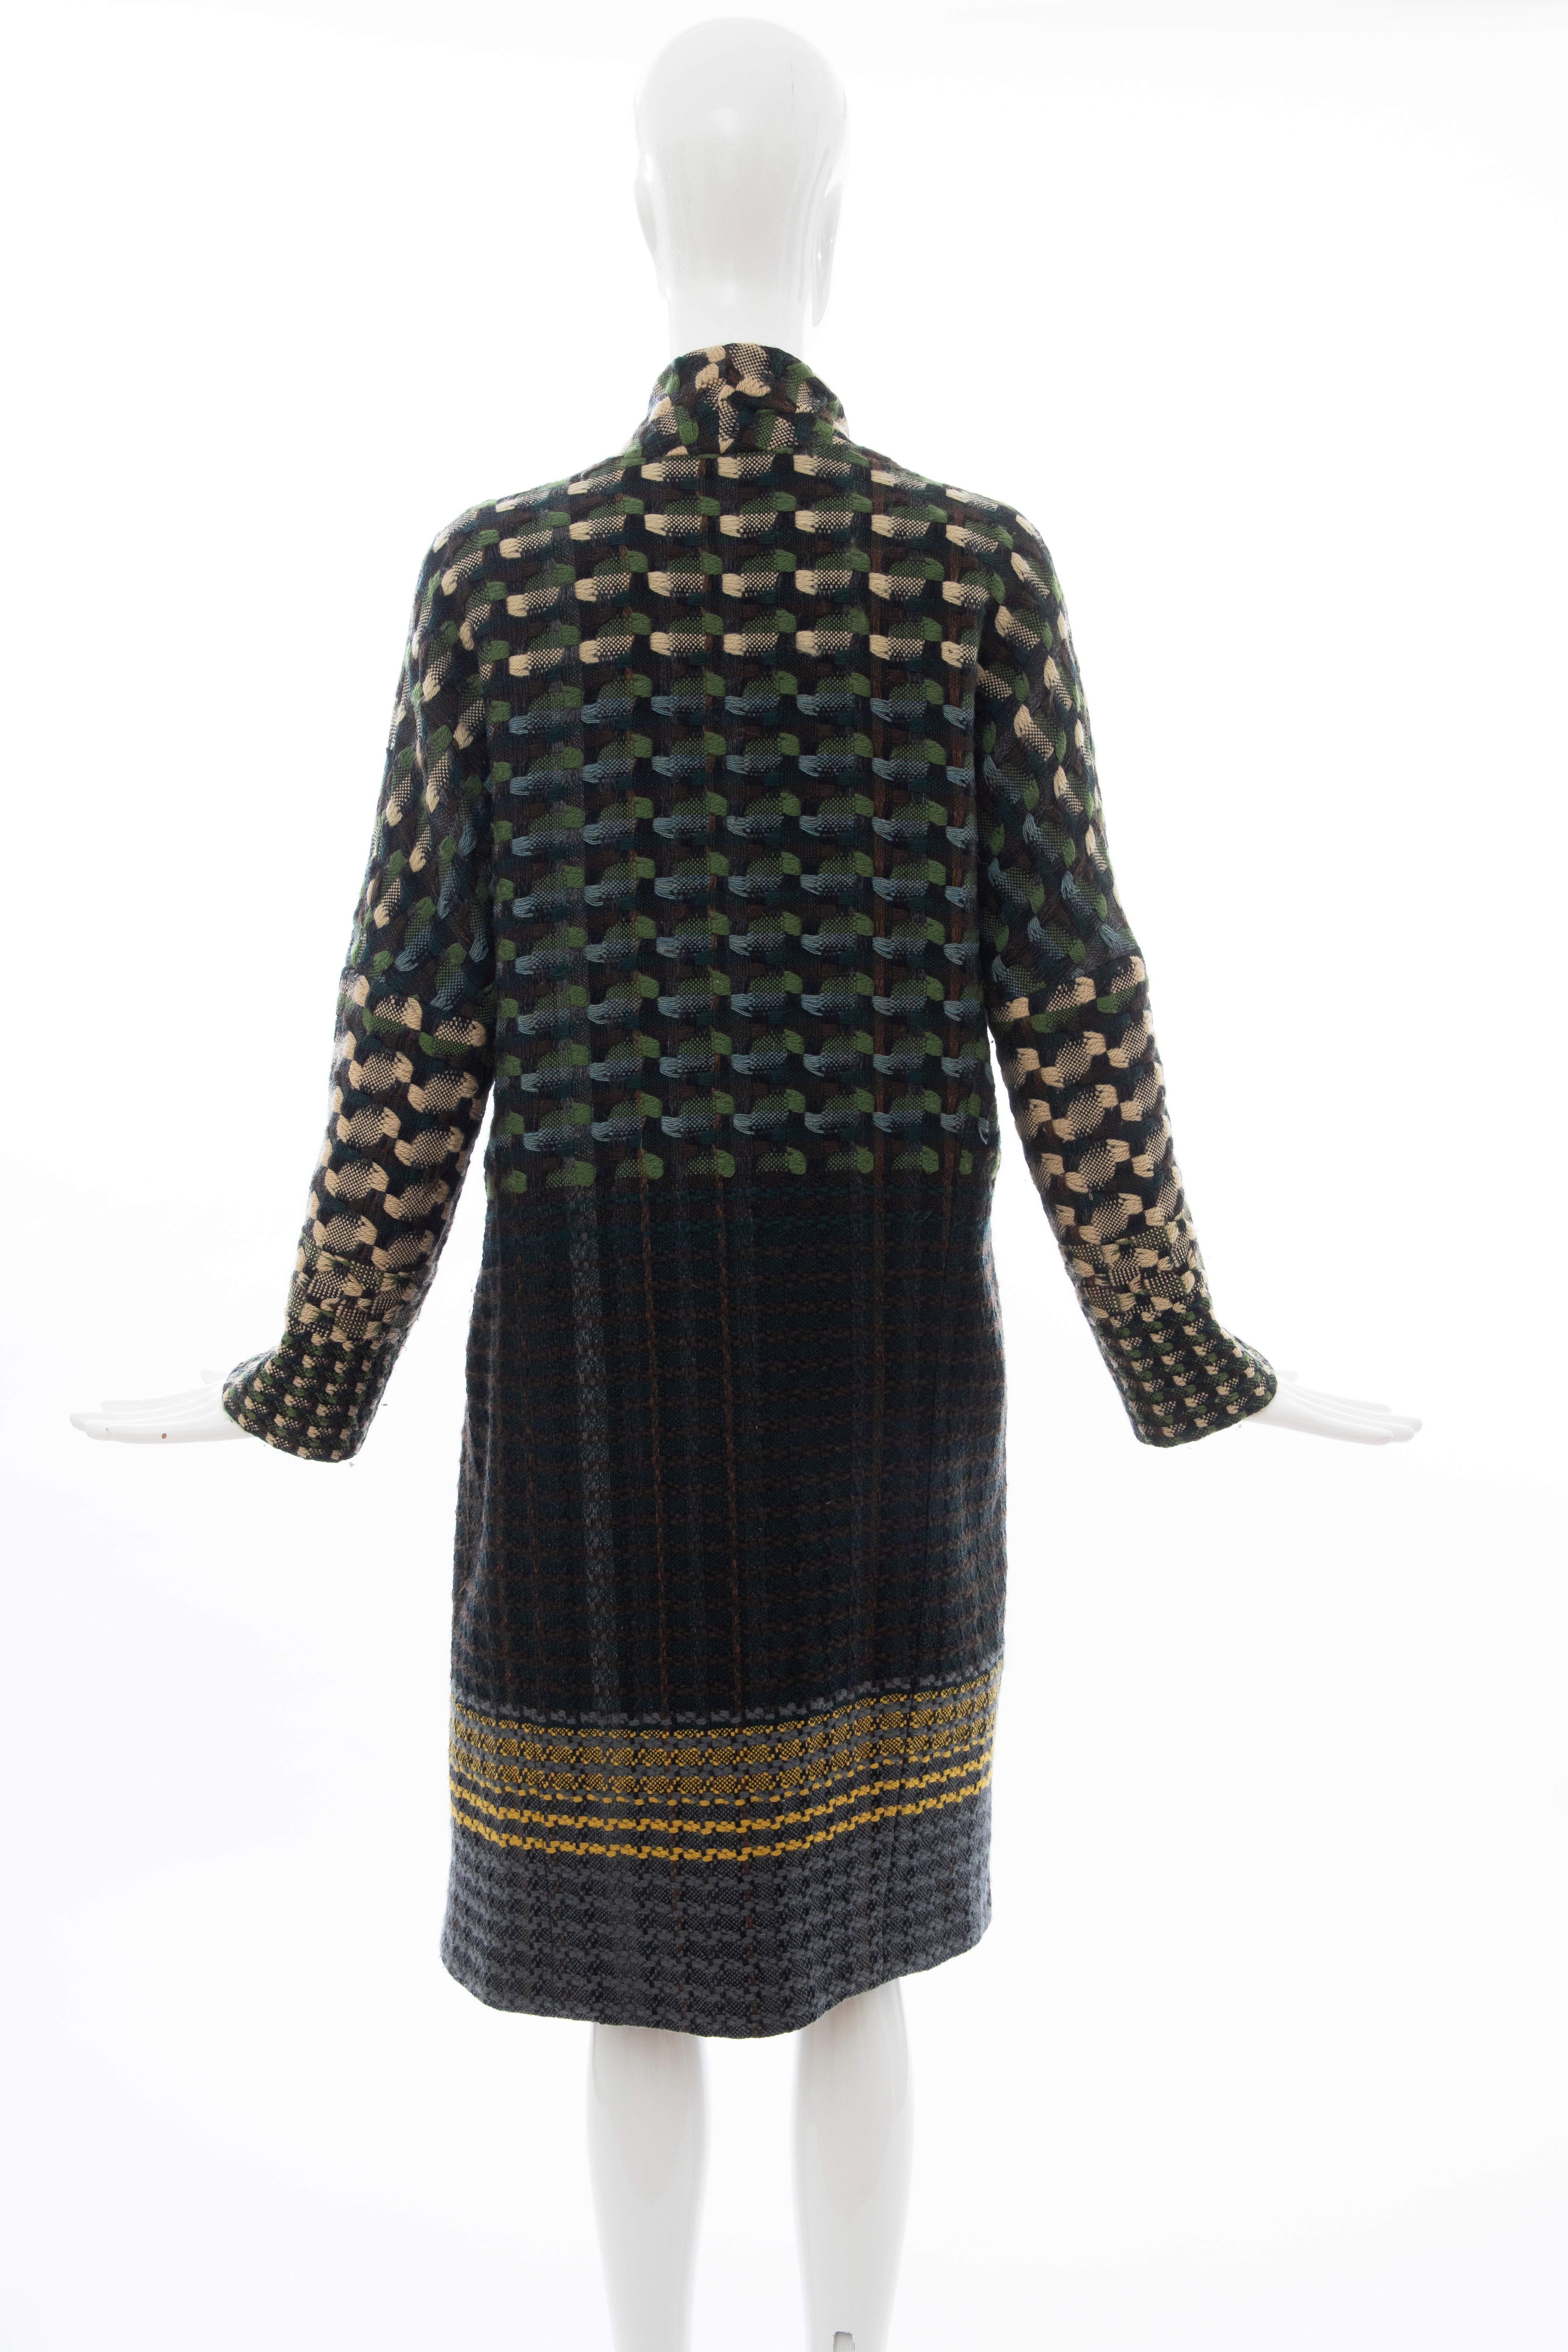 Dries van Noten Runway Wool Plain Weave Tweed Coat, Fall 2004 For Sale 2